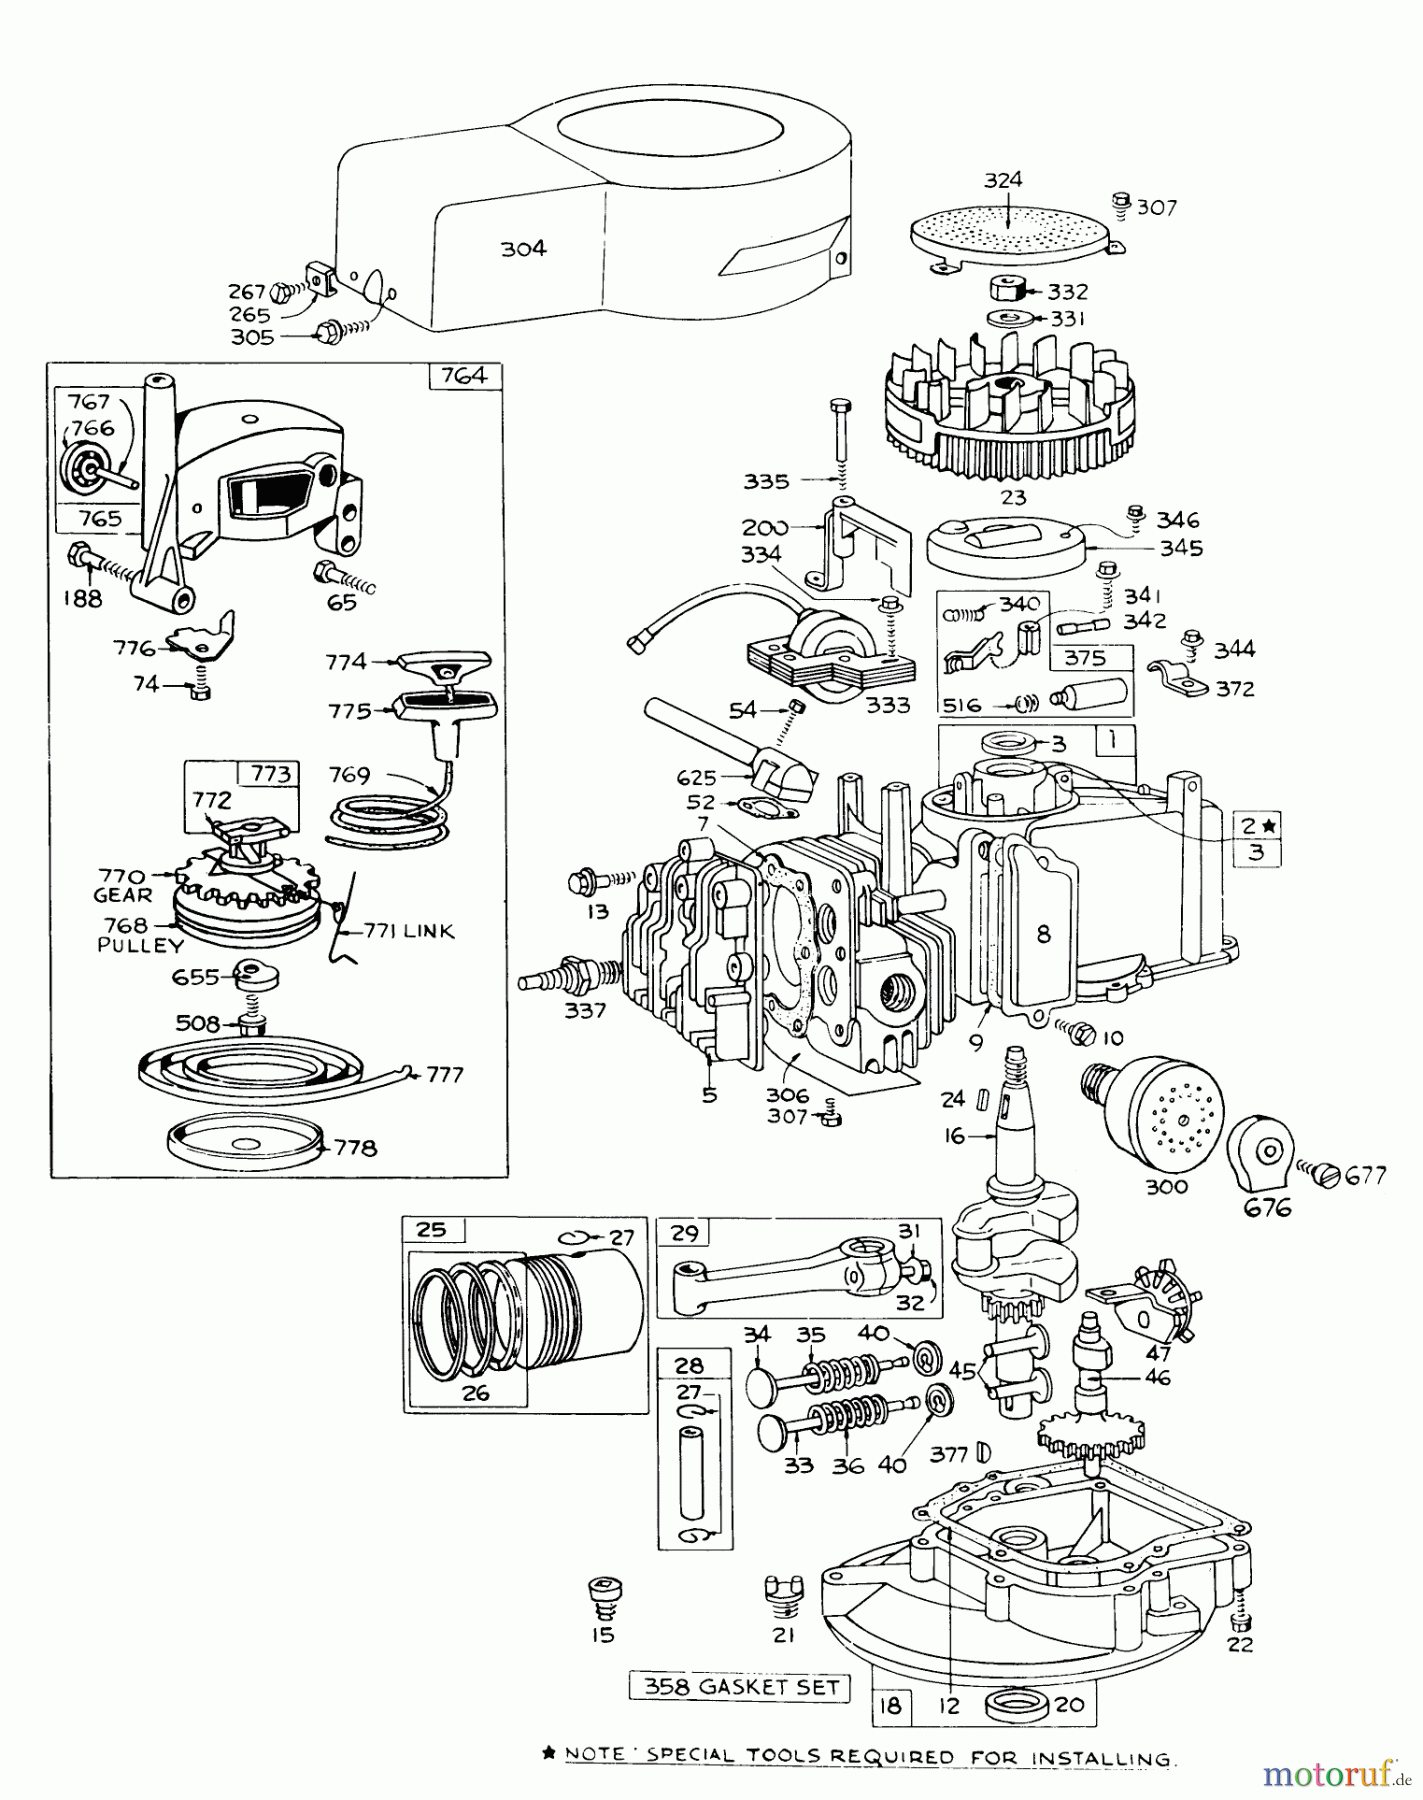  Toro Neu Mowers, Walk-Behind Seite 1 16173 - Toro Whirlwind Lawnmower, 1976 (6000001-6999999) ENGINE BRIGGS & STRATTON MODEL 92508-0904-01 FOR 19